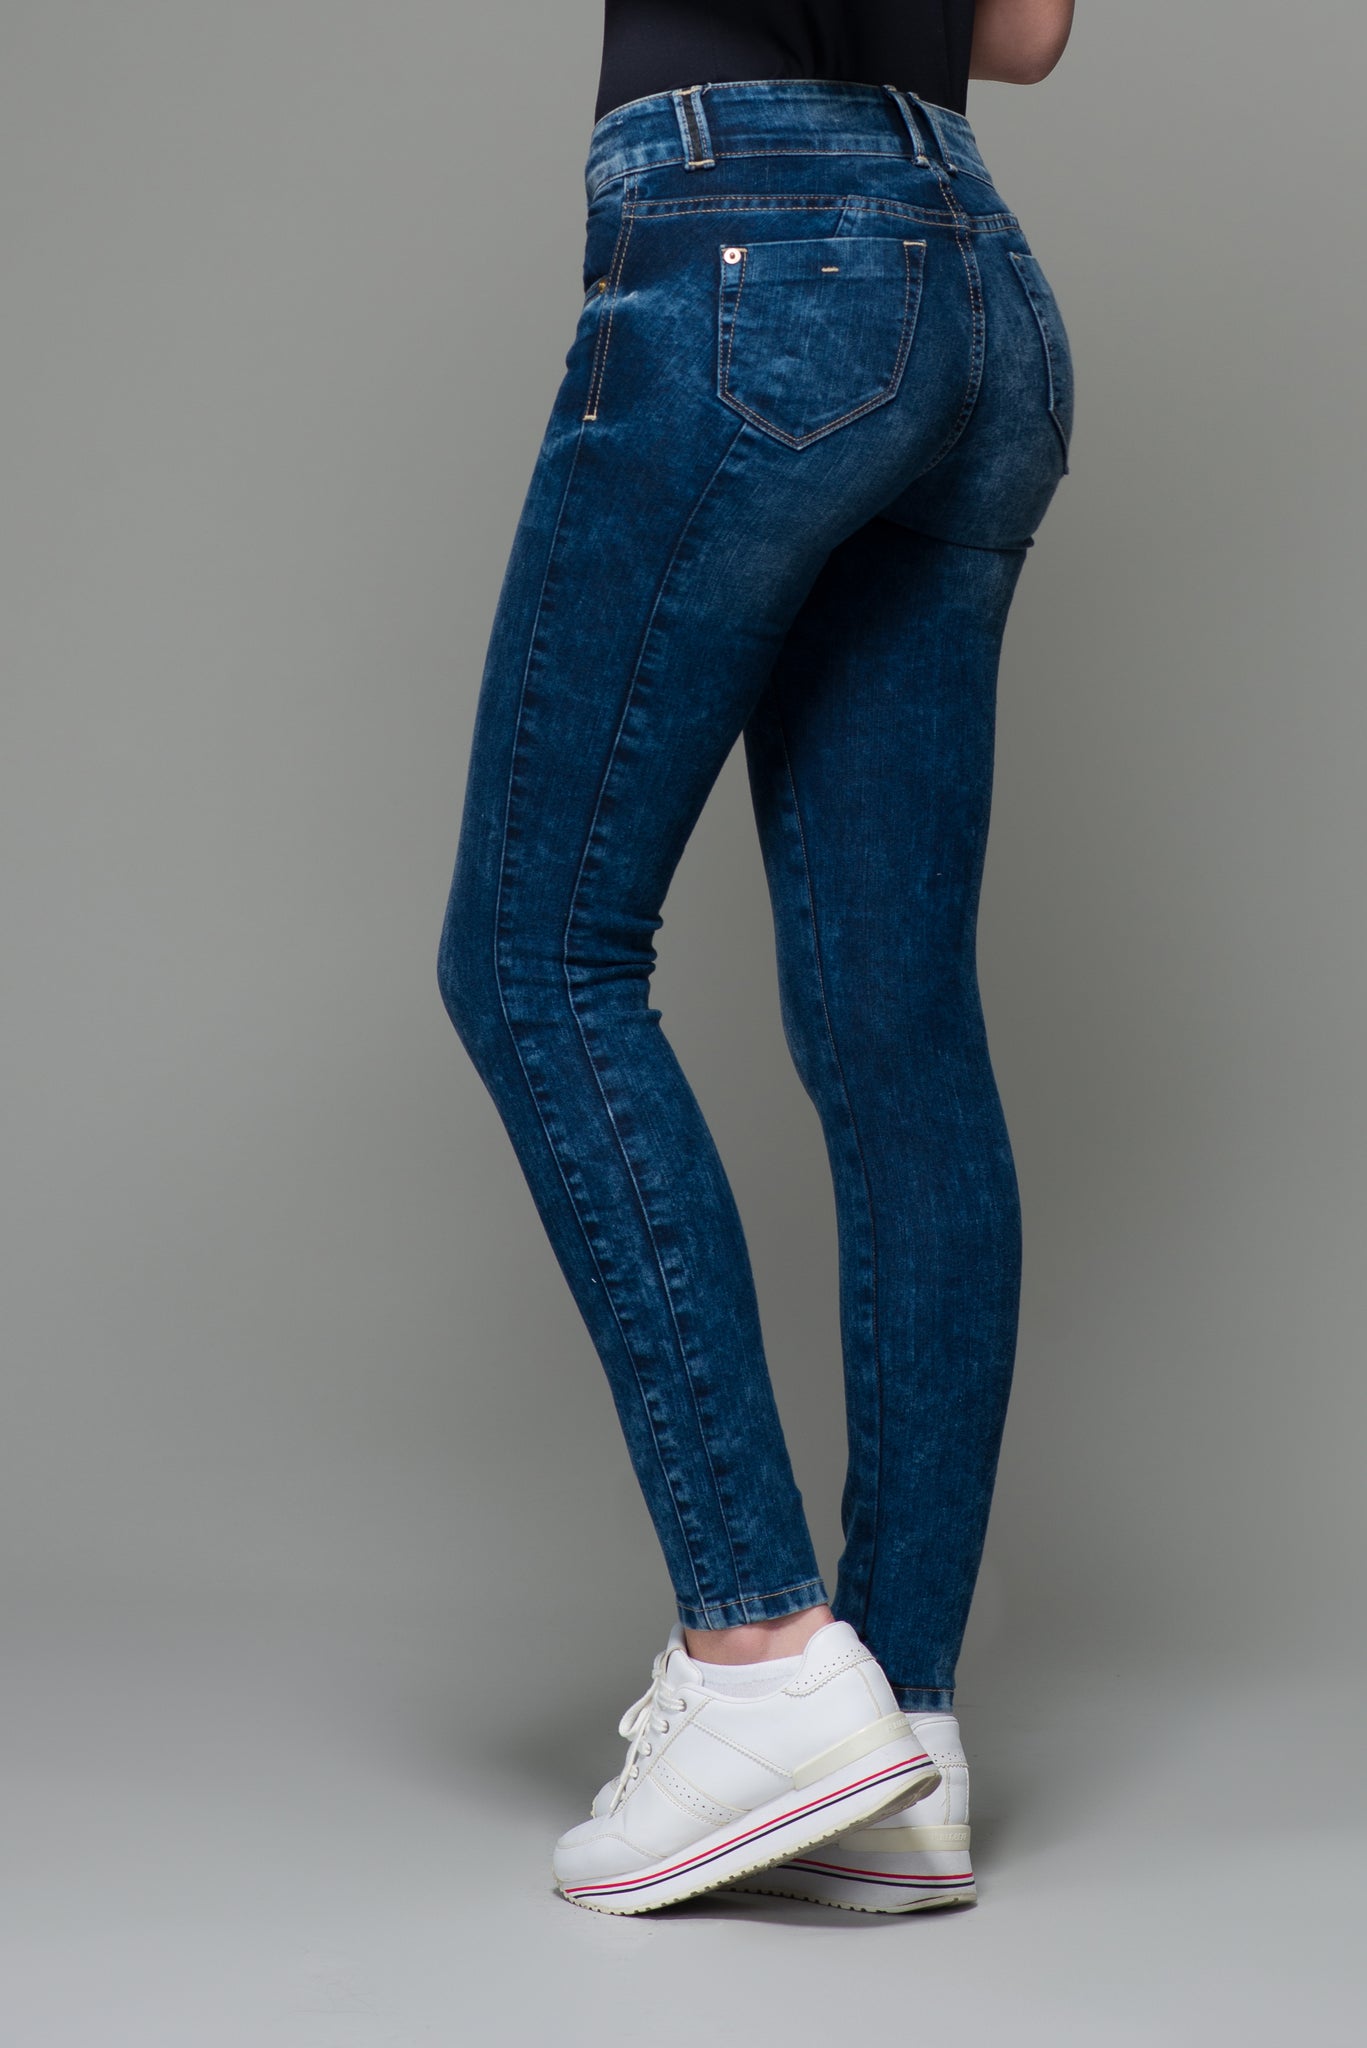 OHPOMP!® Cintura Media Super Skinny Jeans Azul Oscuro S007